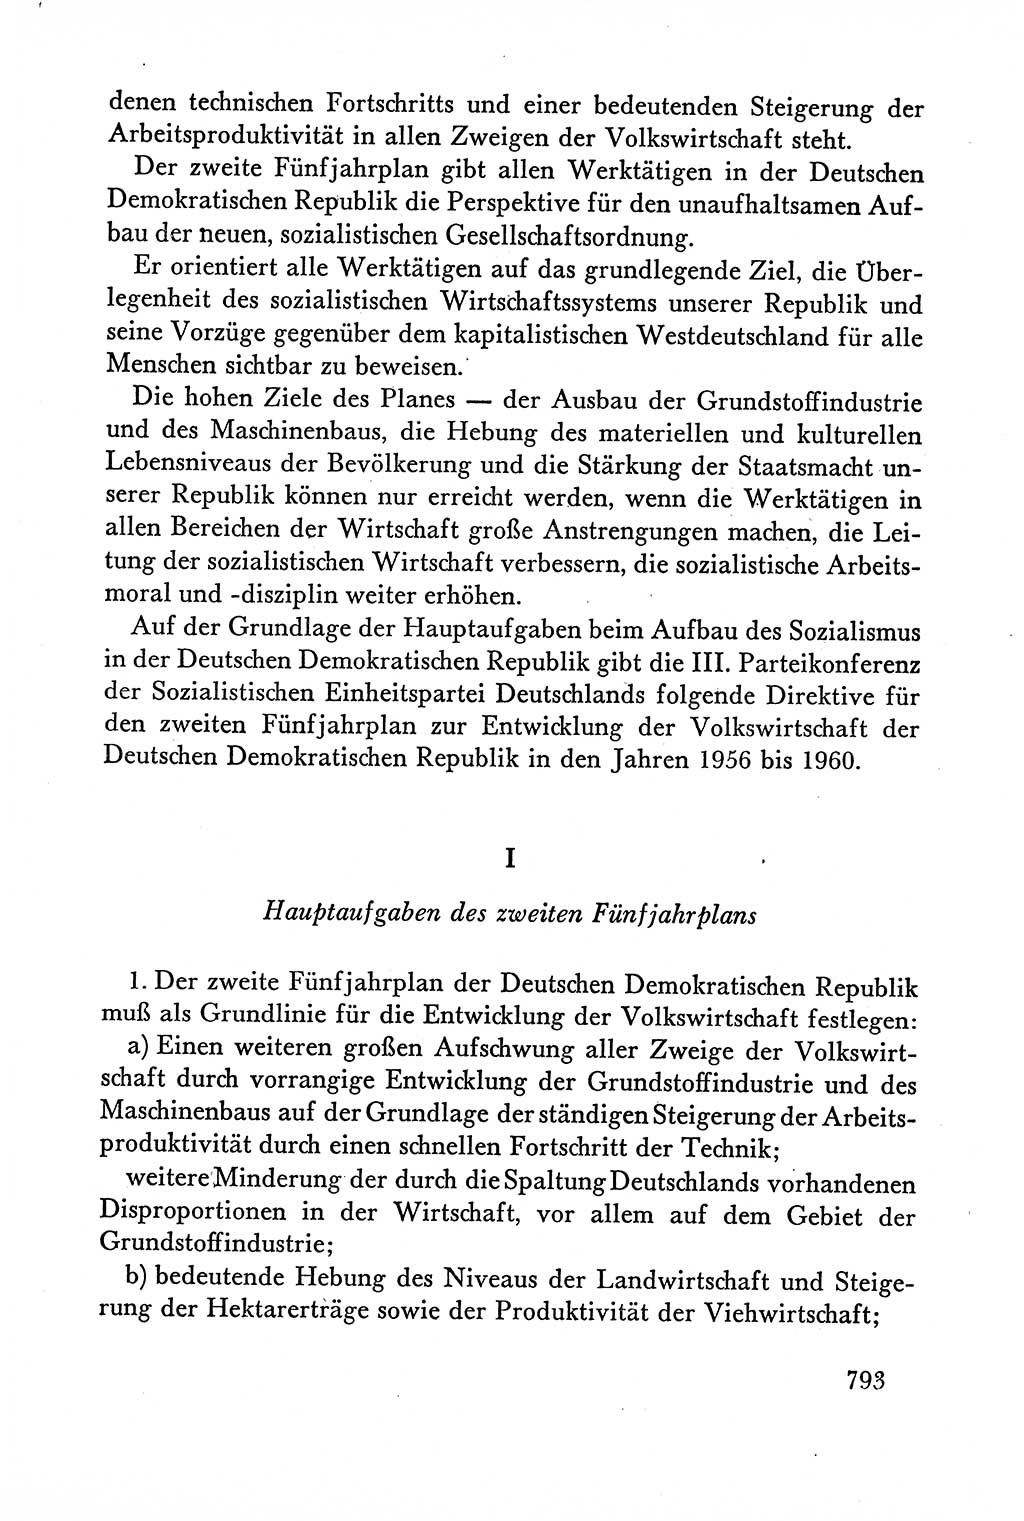 Dokumente der Sozialistischen Einheitspartei Deutschlands (SED) [Deutsche Demokratische Republik (DDR)] 1958-1959, Seite 793 (Dok. SED DDR 1958-1959, S. 793)